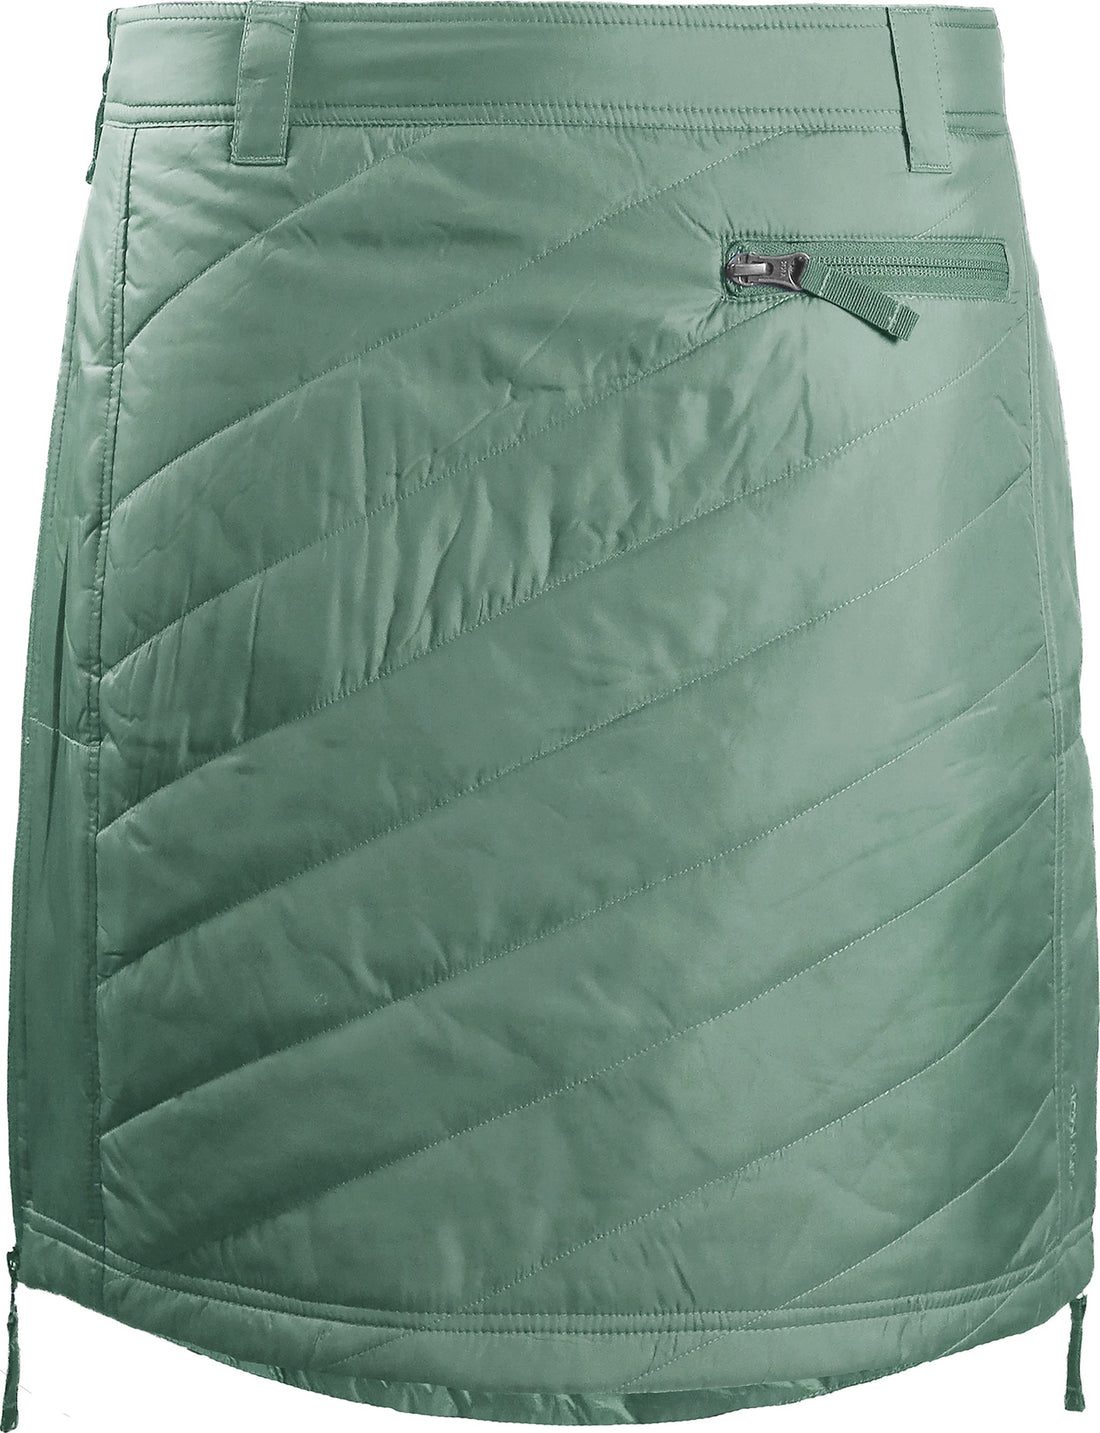 skhoop sandy short skirt in frost green